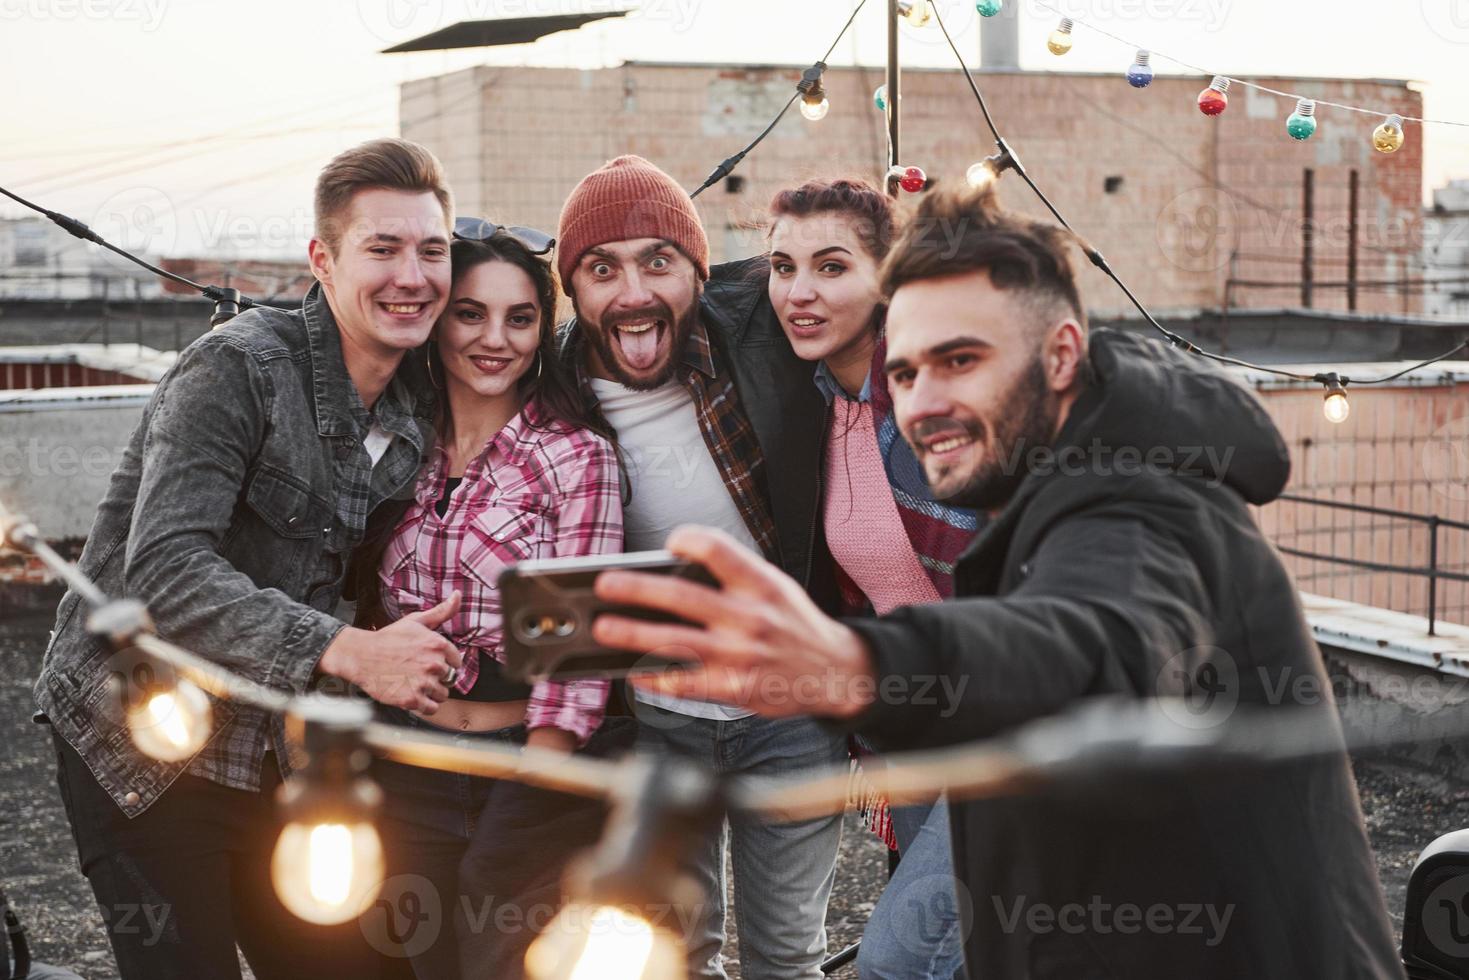 ragazzo in mezzo fa una faccia buffa. gruppo di giovani amici allegri che si divertono, si abbracciano e si fanno selfie sul tetto con lampadine decorate foto